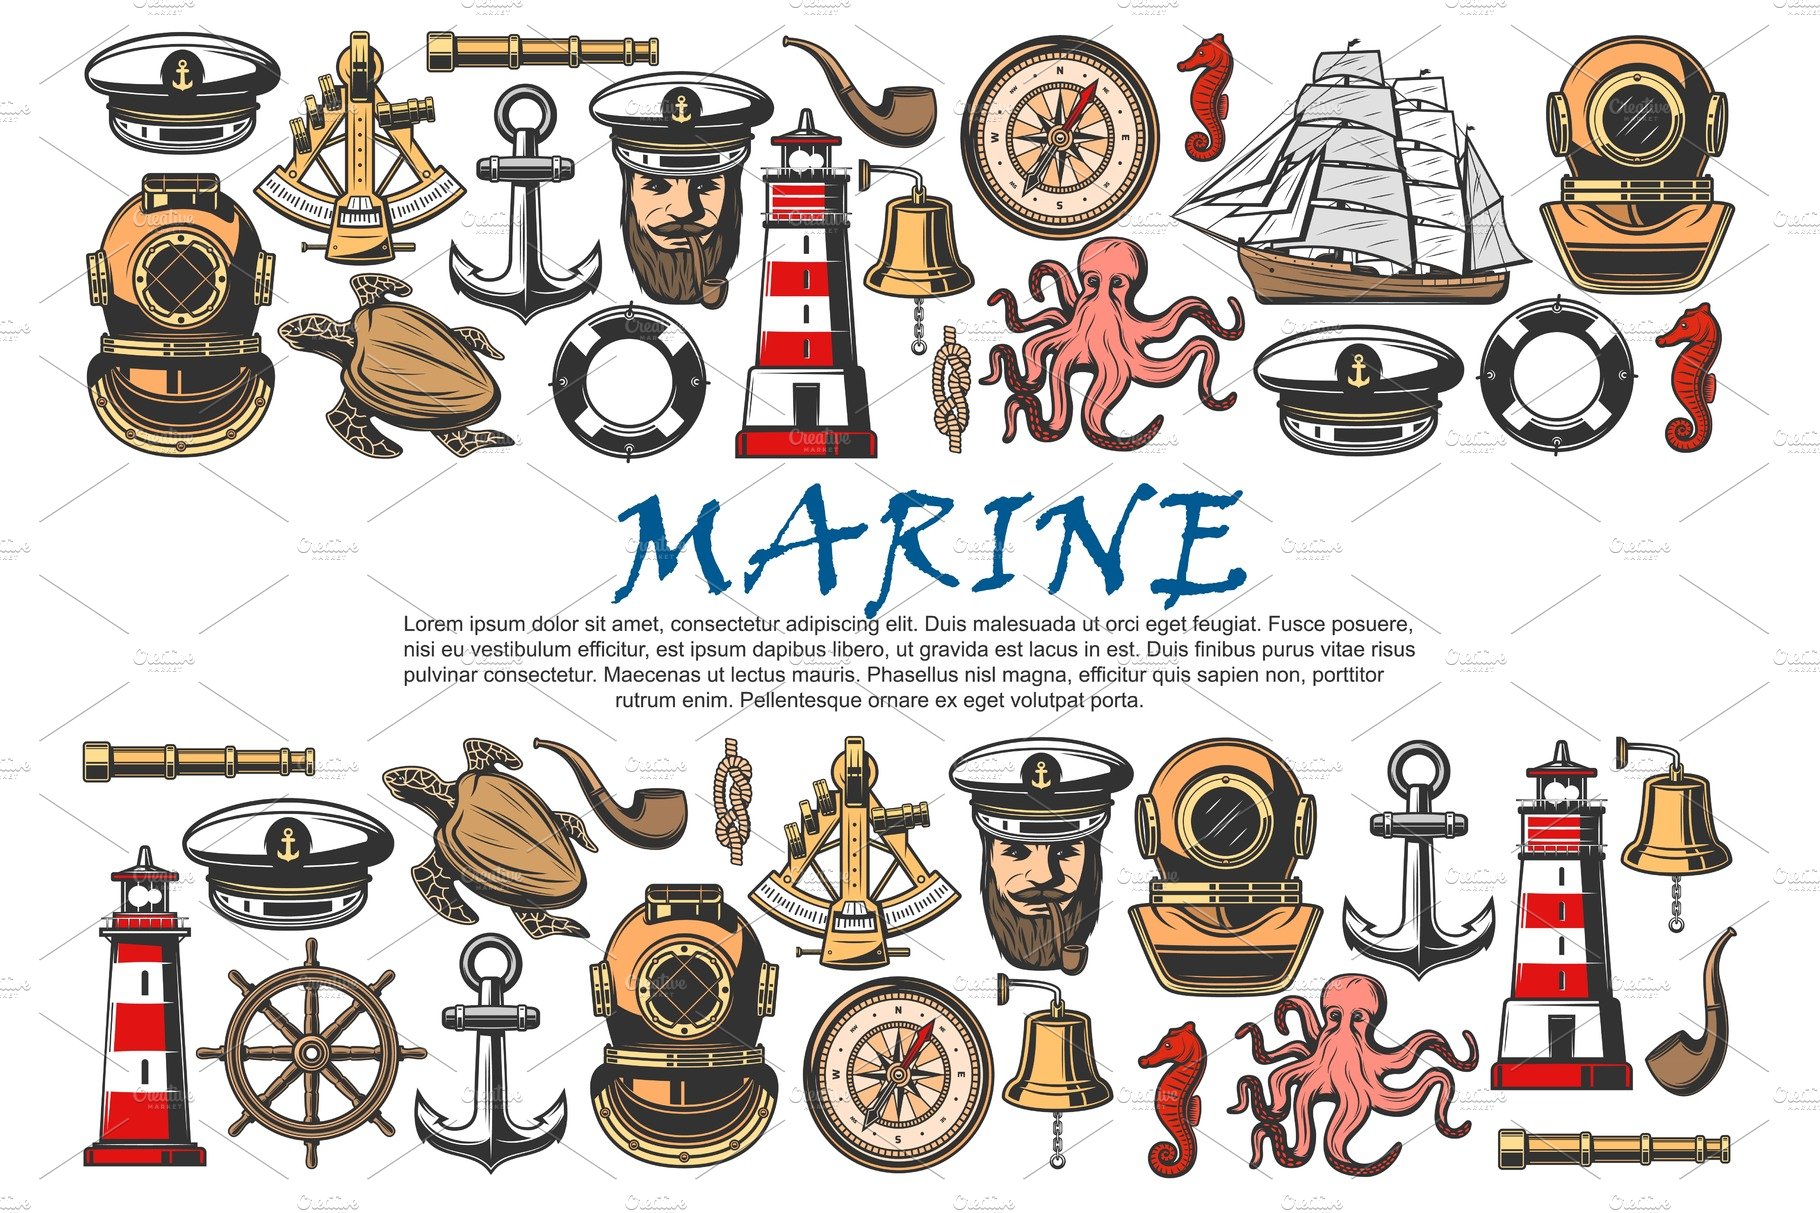 Sea ship, anchor, sailor, helm cover image.